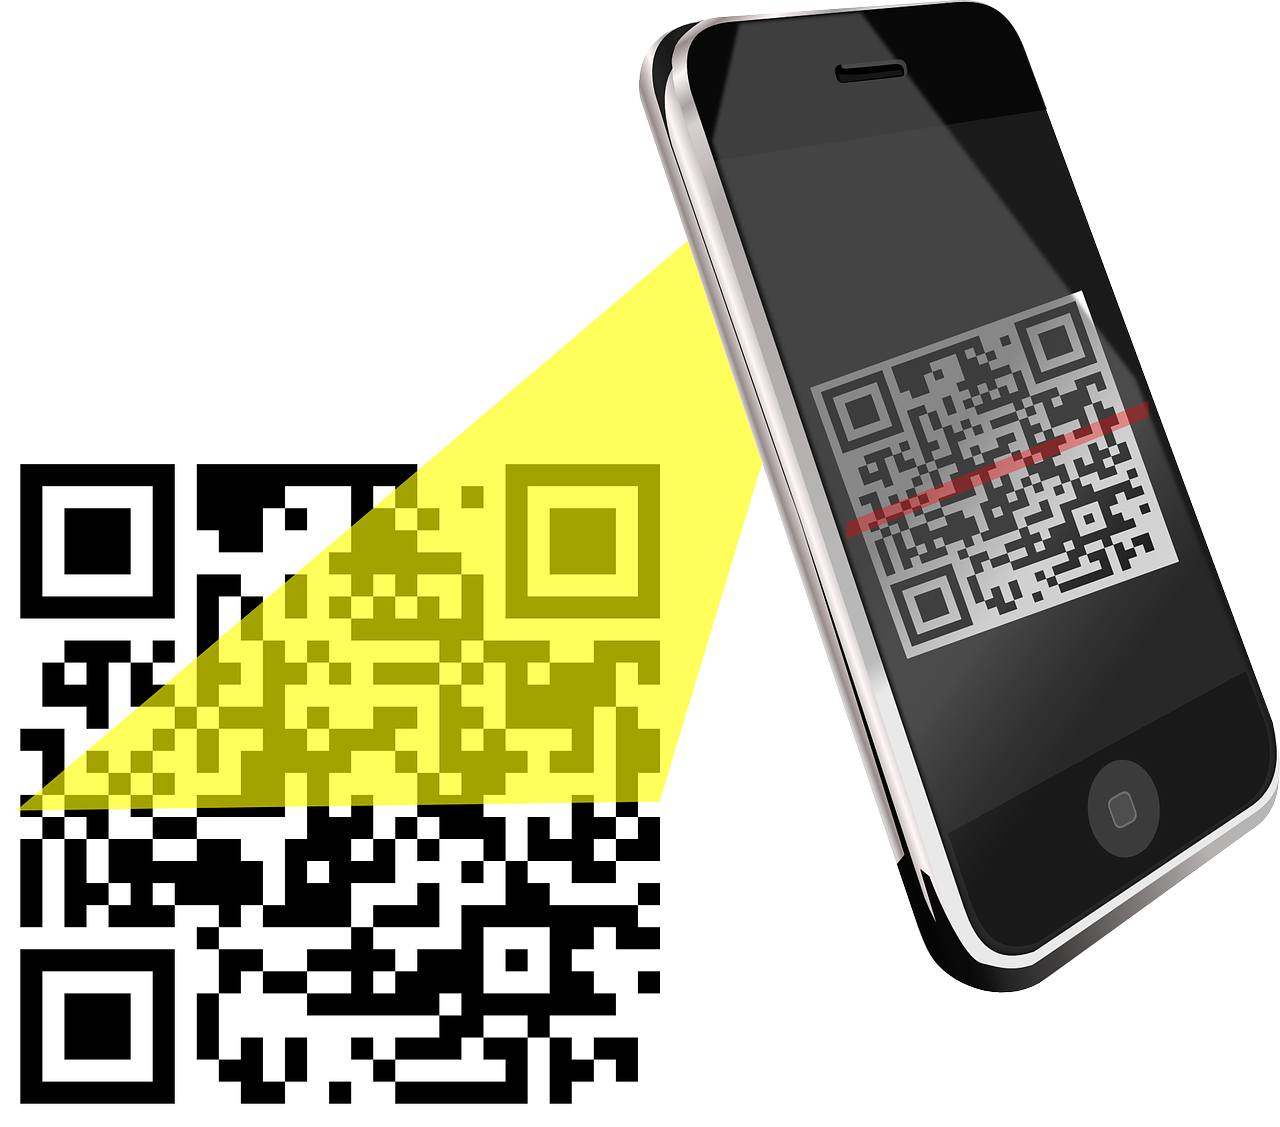 QR код. Смартфон QR код. Сканировать QR код. Иллюстрация смартфона с QR кодом. Проверить регистрацию по qr коду